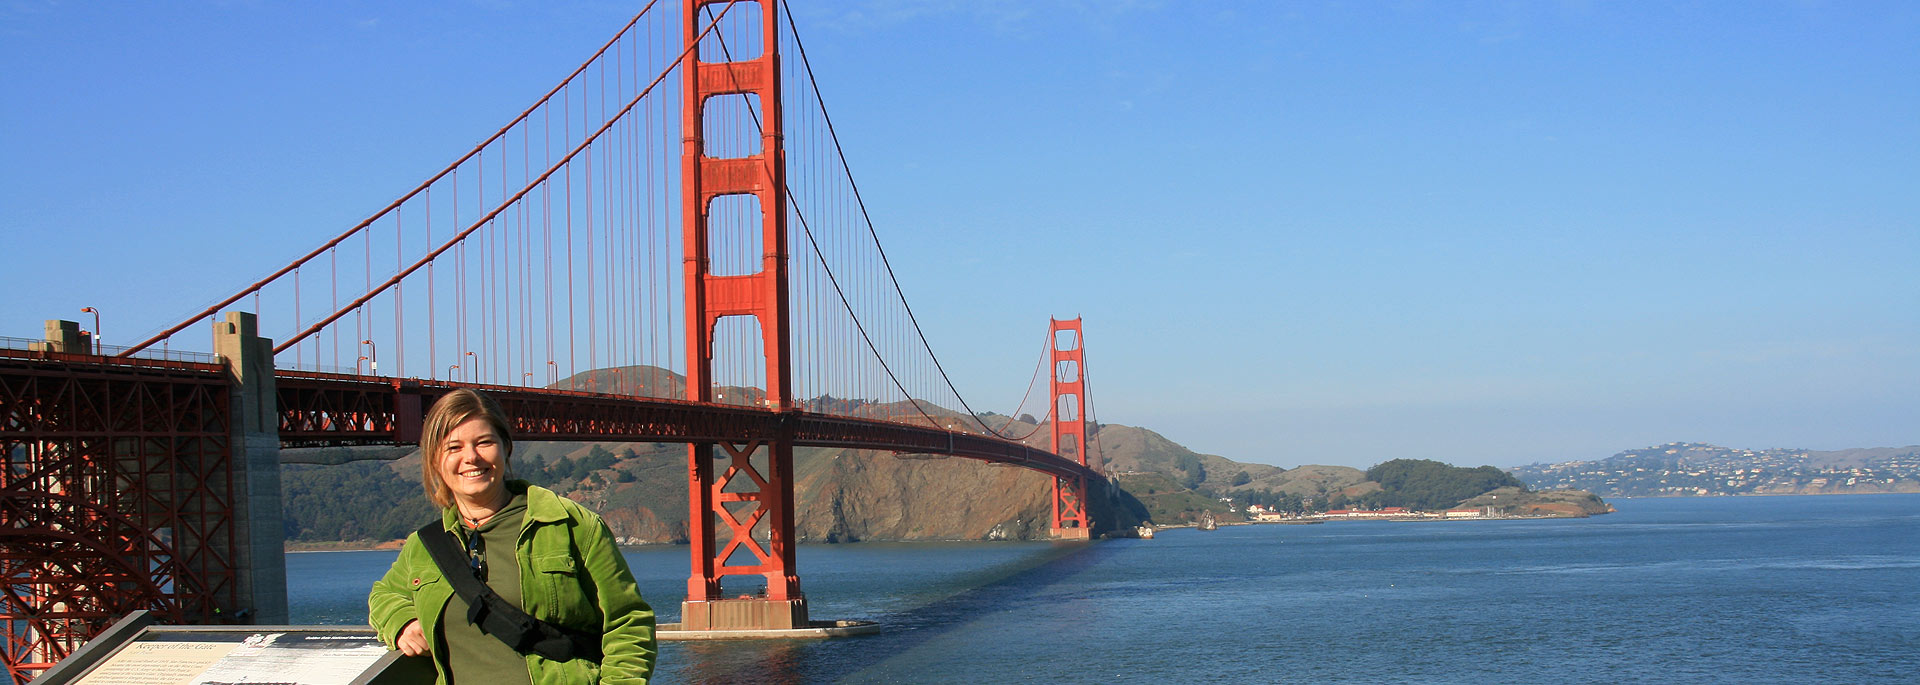 Fotos: Golden Gate Bridge in San Francisco